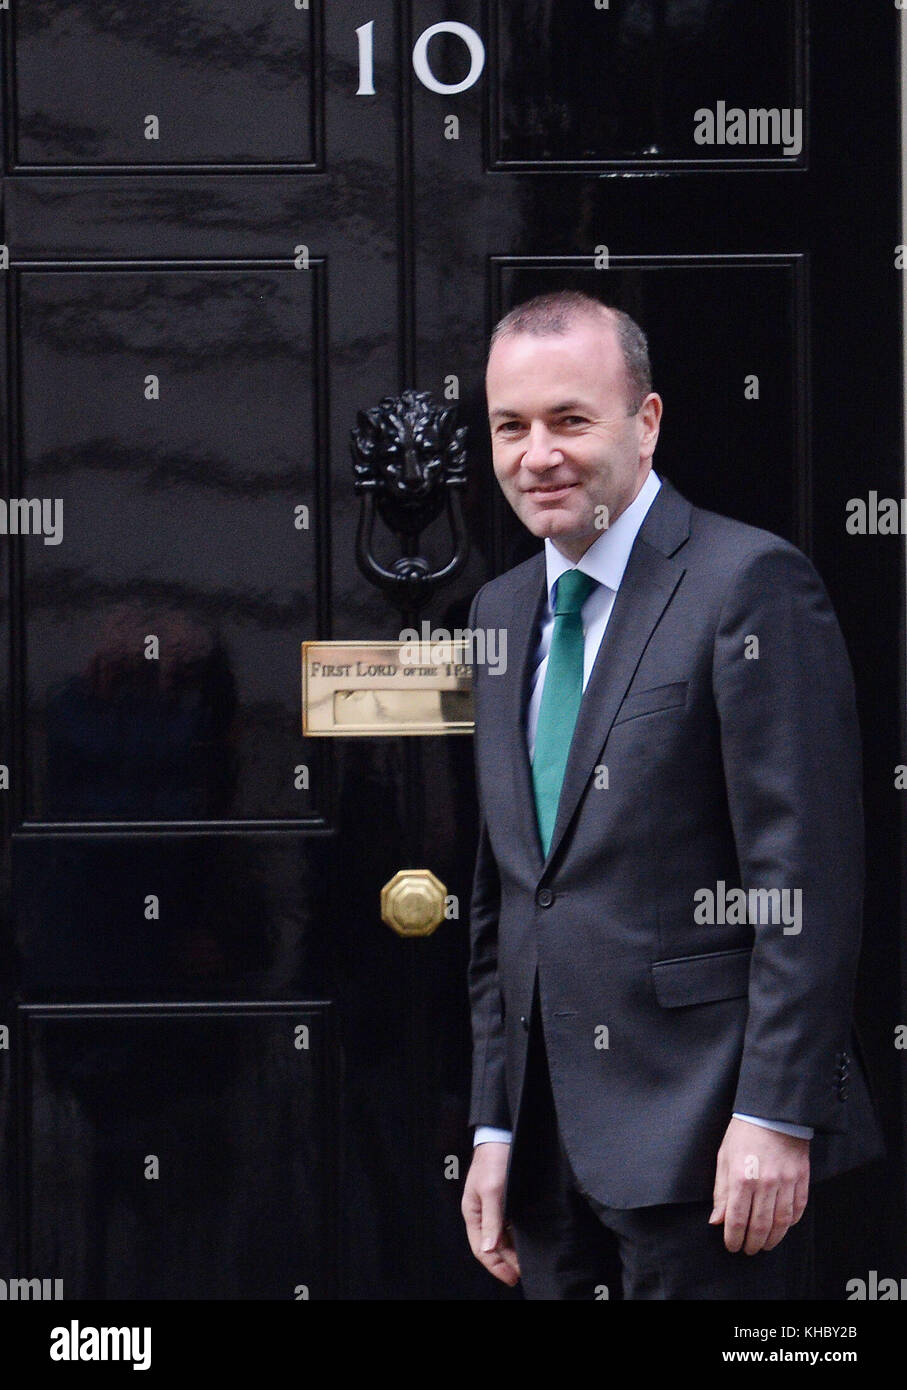 Manfred Weber, président du Groupe PPE, arrive au 10 Downing Street avant de discuter avec la première ministre Theresa May. Banque D'Images